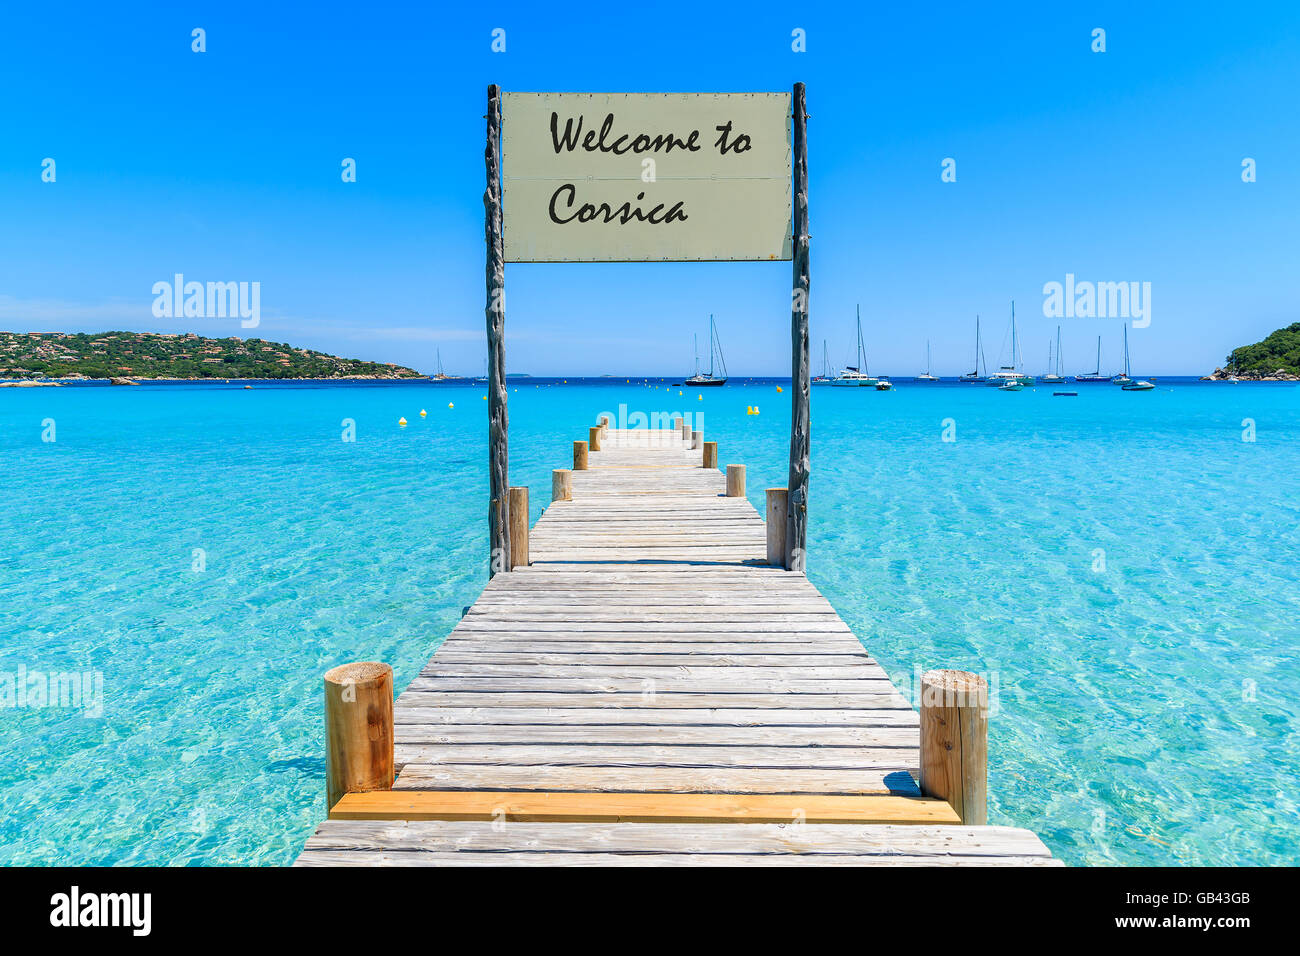 Melden Sie auf hölzernen Steg am Strand von Santa Giulia mit Worten "Willkommen nach Korsika" Gruß gemalt an Bord, Korsika, Frankreich Stockfoto